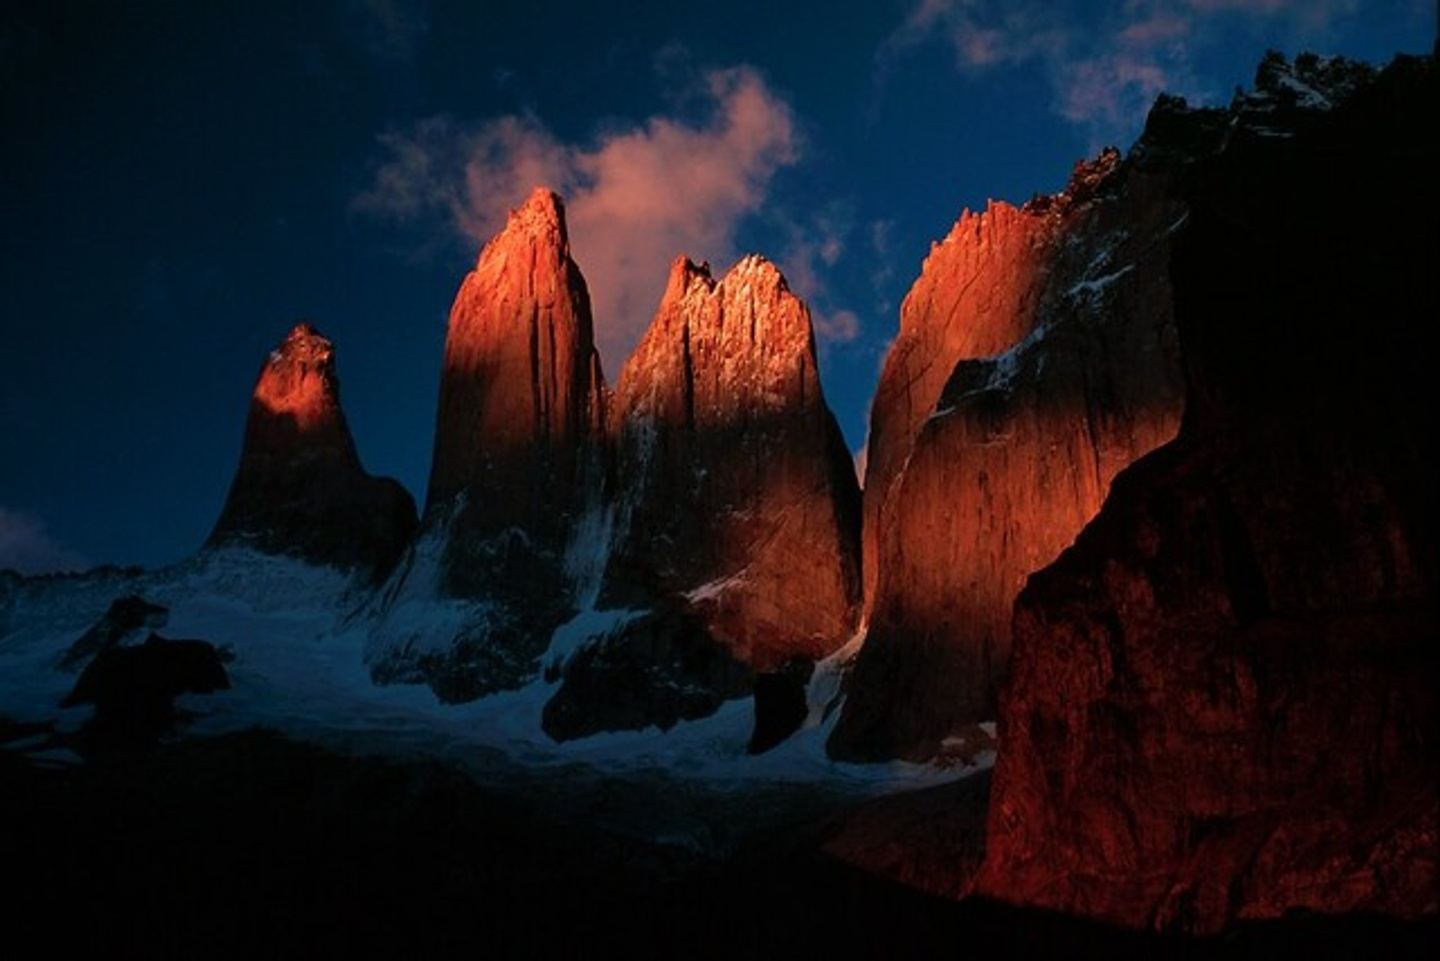 Explore Patagonia